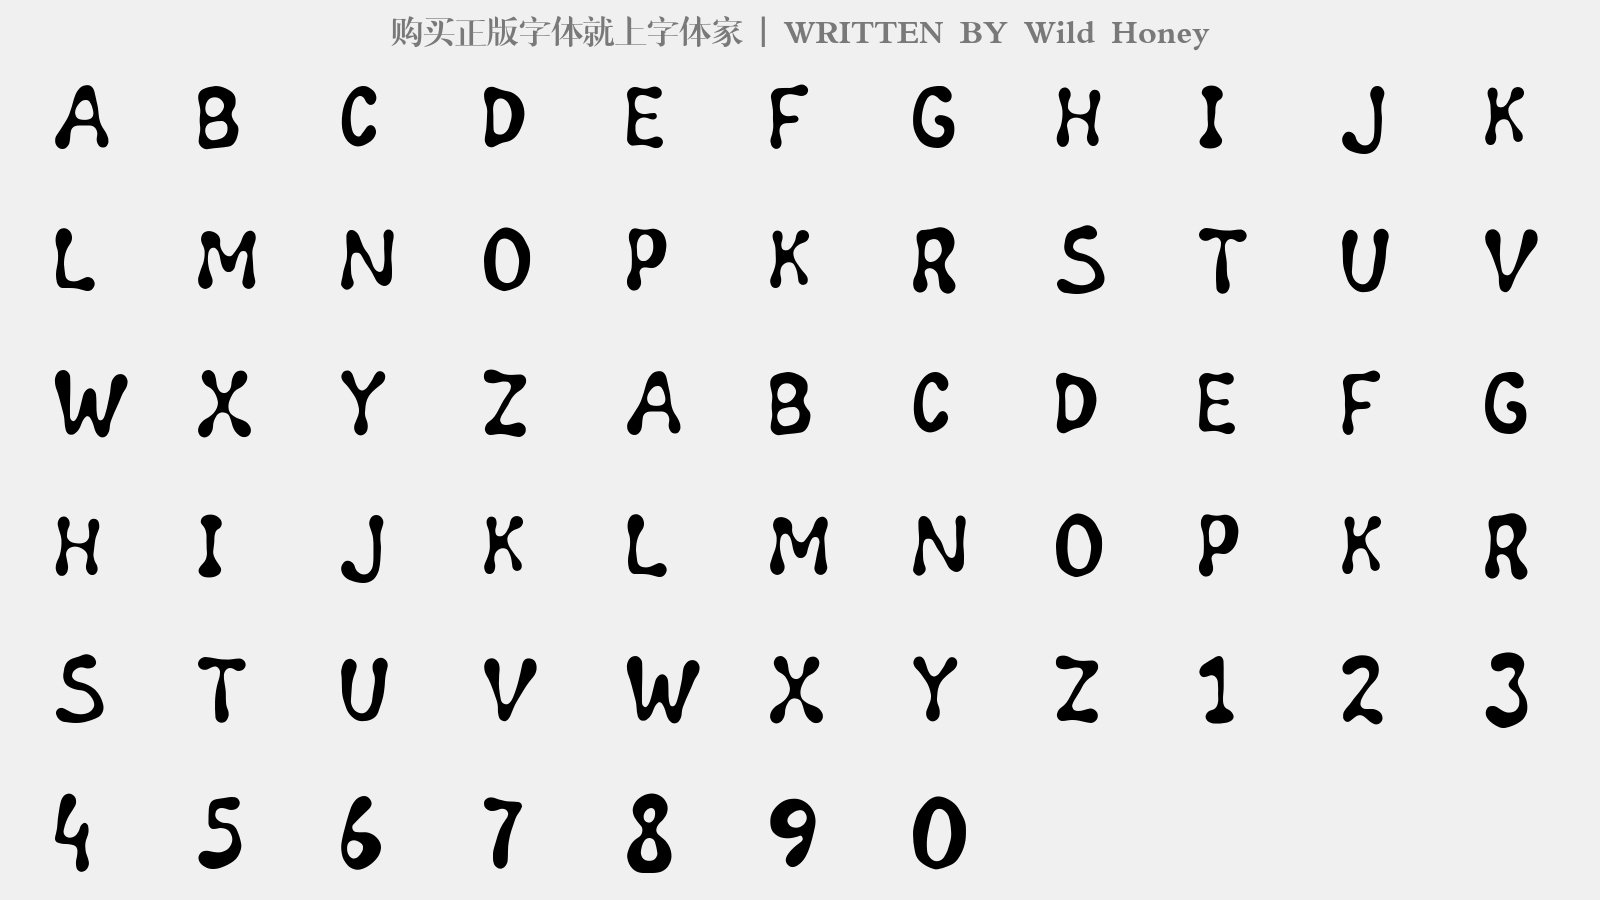 Wild Honey - 大写字母/小写字母/数字